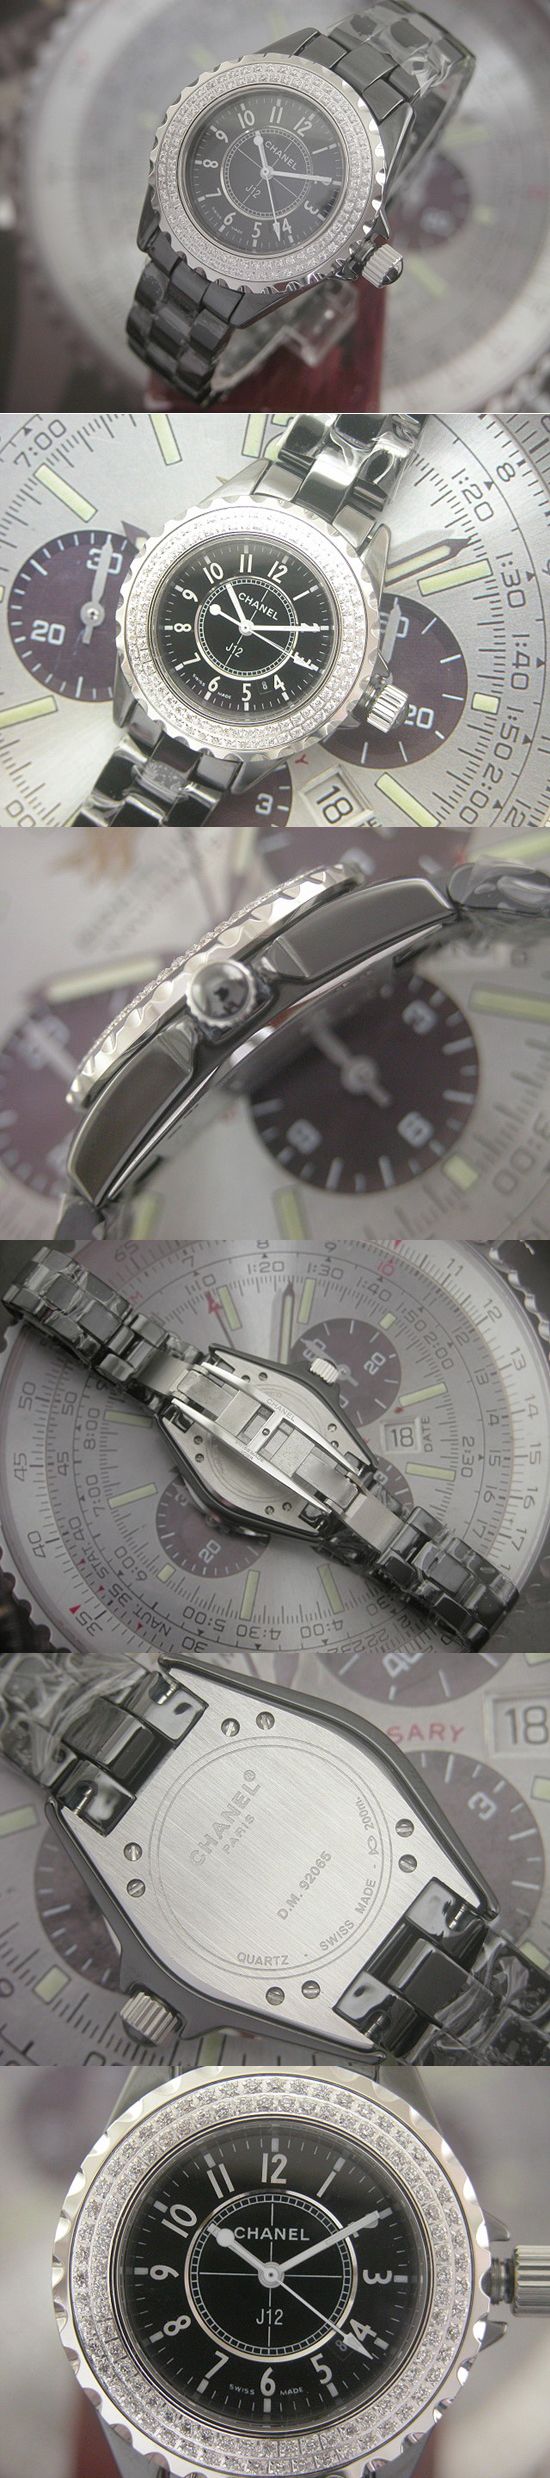 おしゃれなブランド時計がCHANEL-H0950-aa-シャネルーJ12-女性用を提供します.